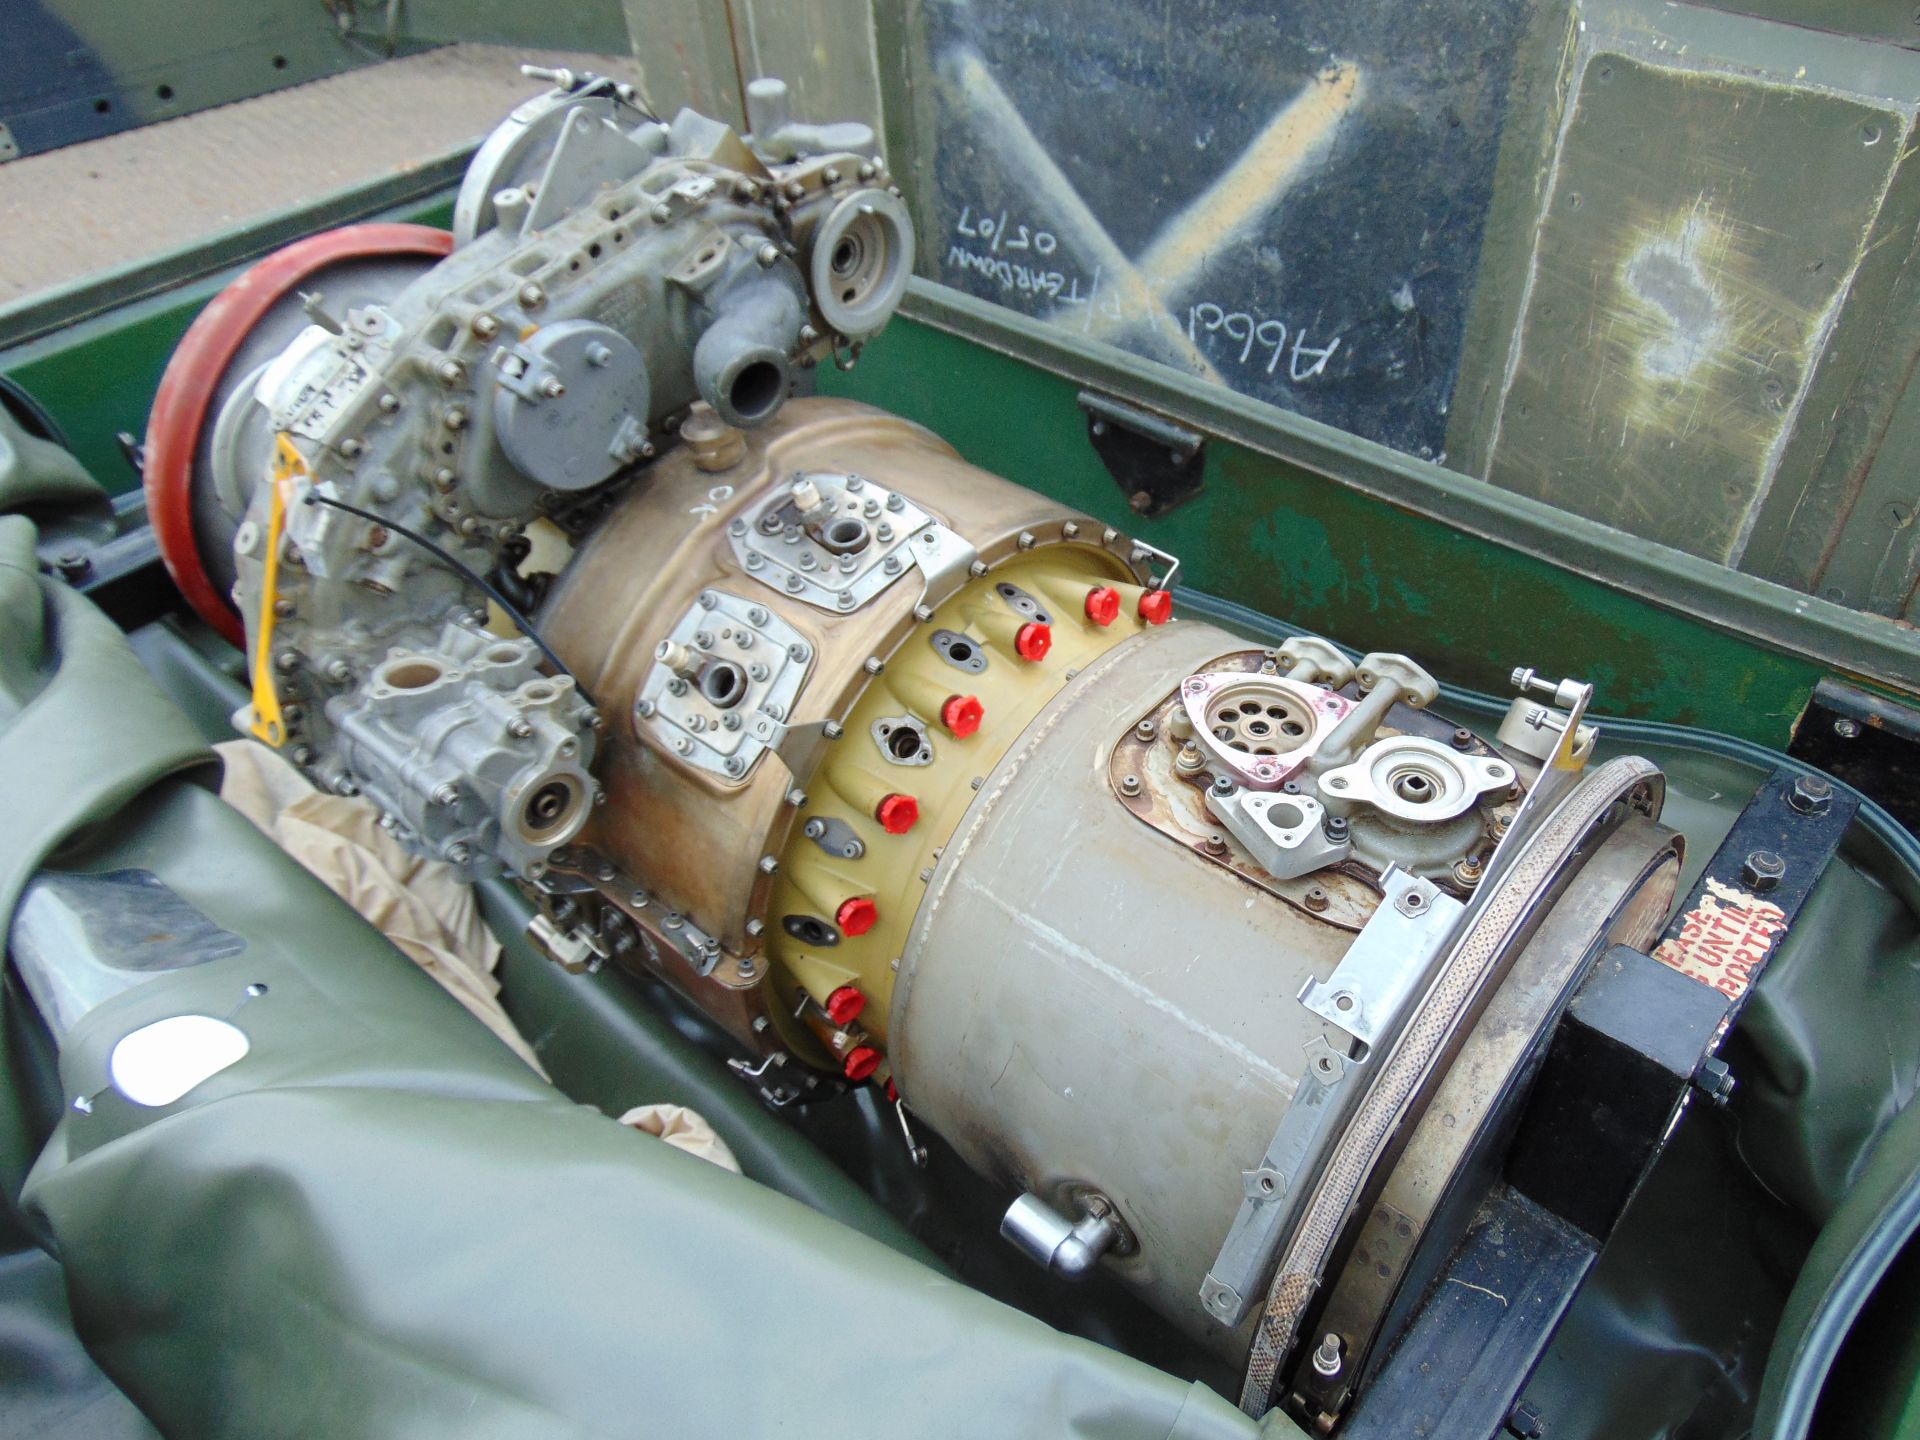 Rolls Royce Gem Jet Engine complete with Transportation Cradle - Image 2 of 8